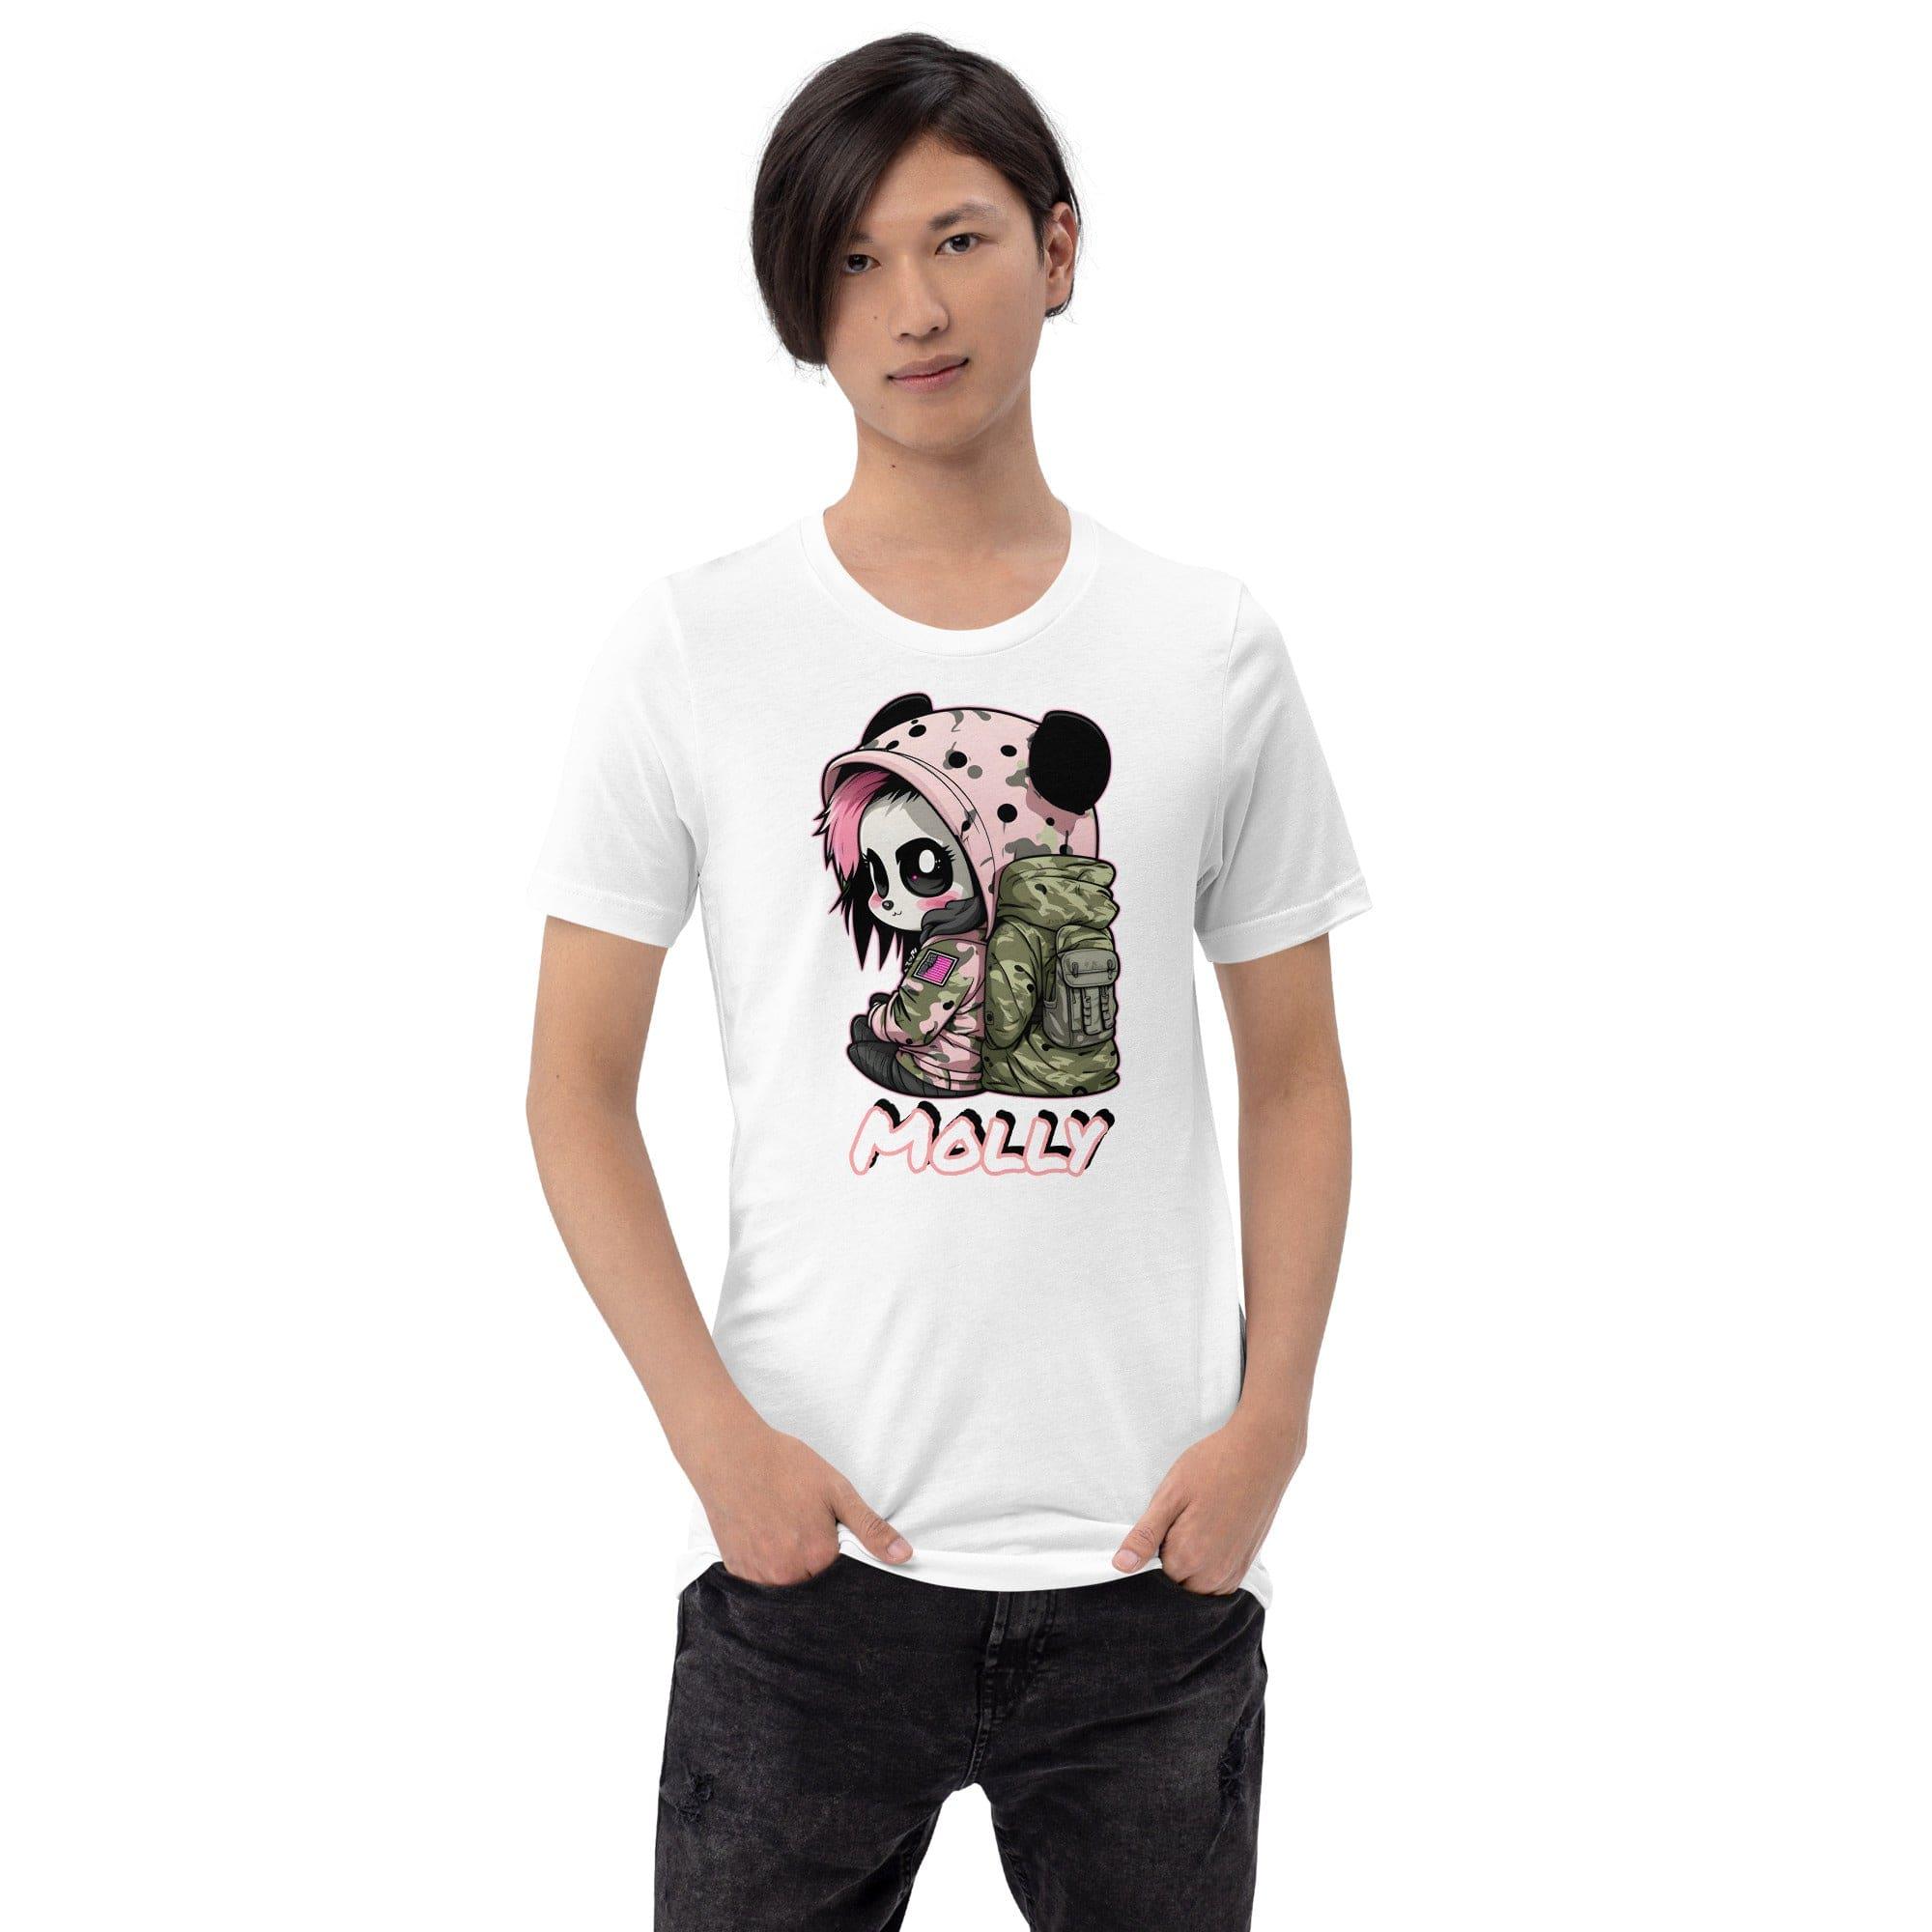 Panda T-shirt Street Girl Panda Molly Short Sleeve Top - TopKoalaTee